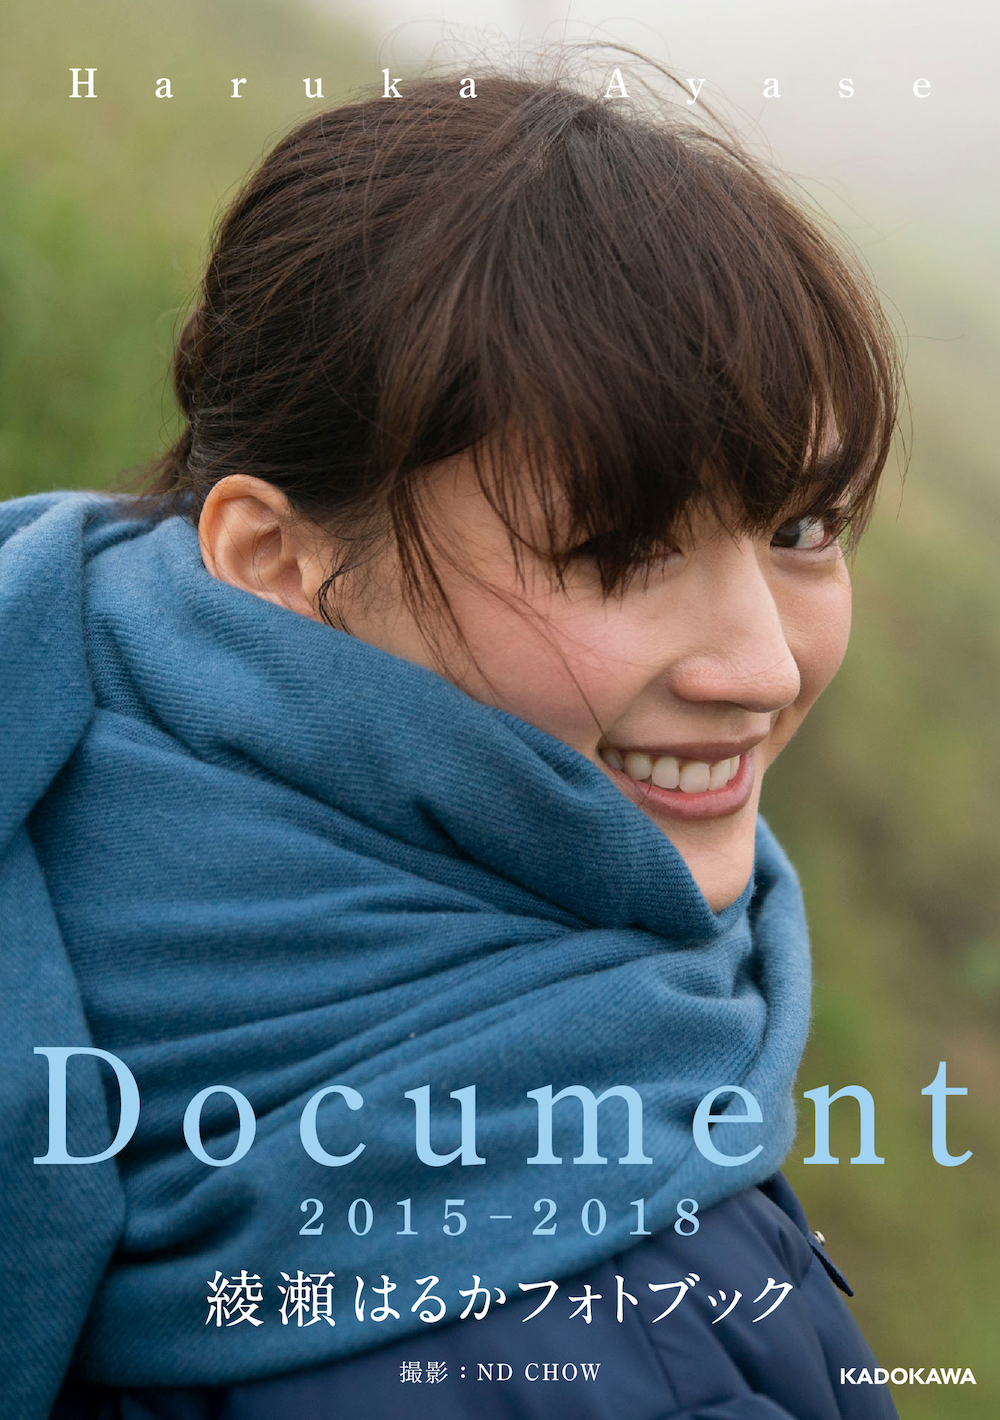 女優・綾瀬はるかの2015～2018年の歩みを記録した『Document 2015-2018 綾瀬はるかフォトブック』